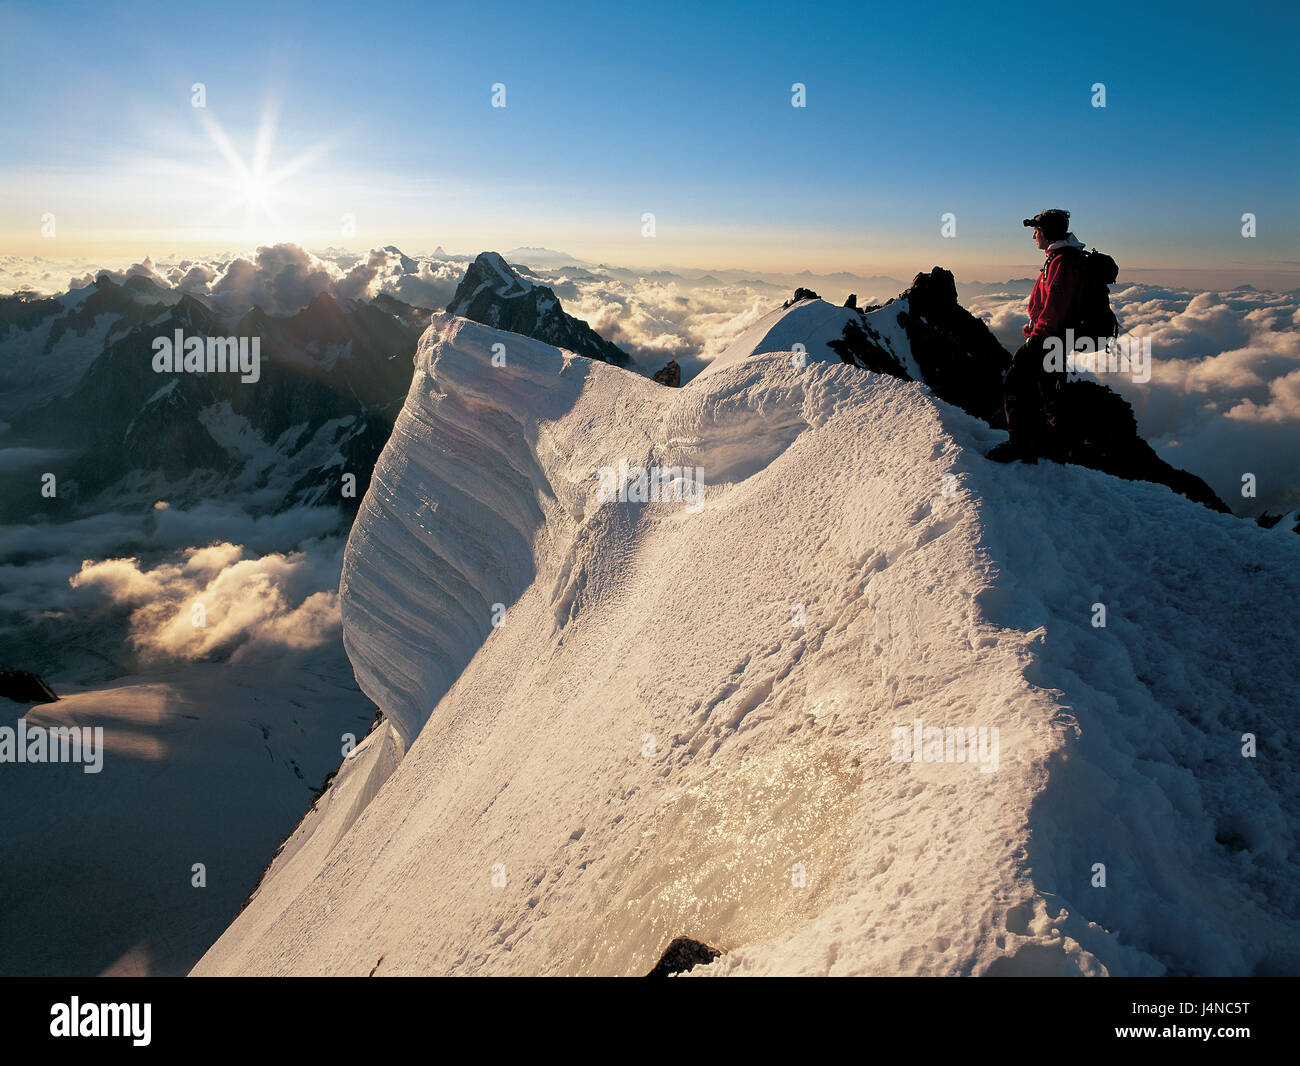 Frankreich, Savoyer Alpen, Montblanc du Tacul, Gebirgsmassiv, Bergsteiger, Ständer, Gipfel, Abend, tuning Stockfoto